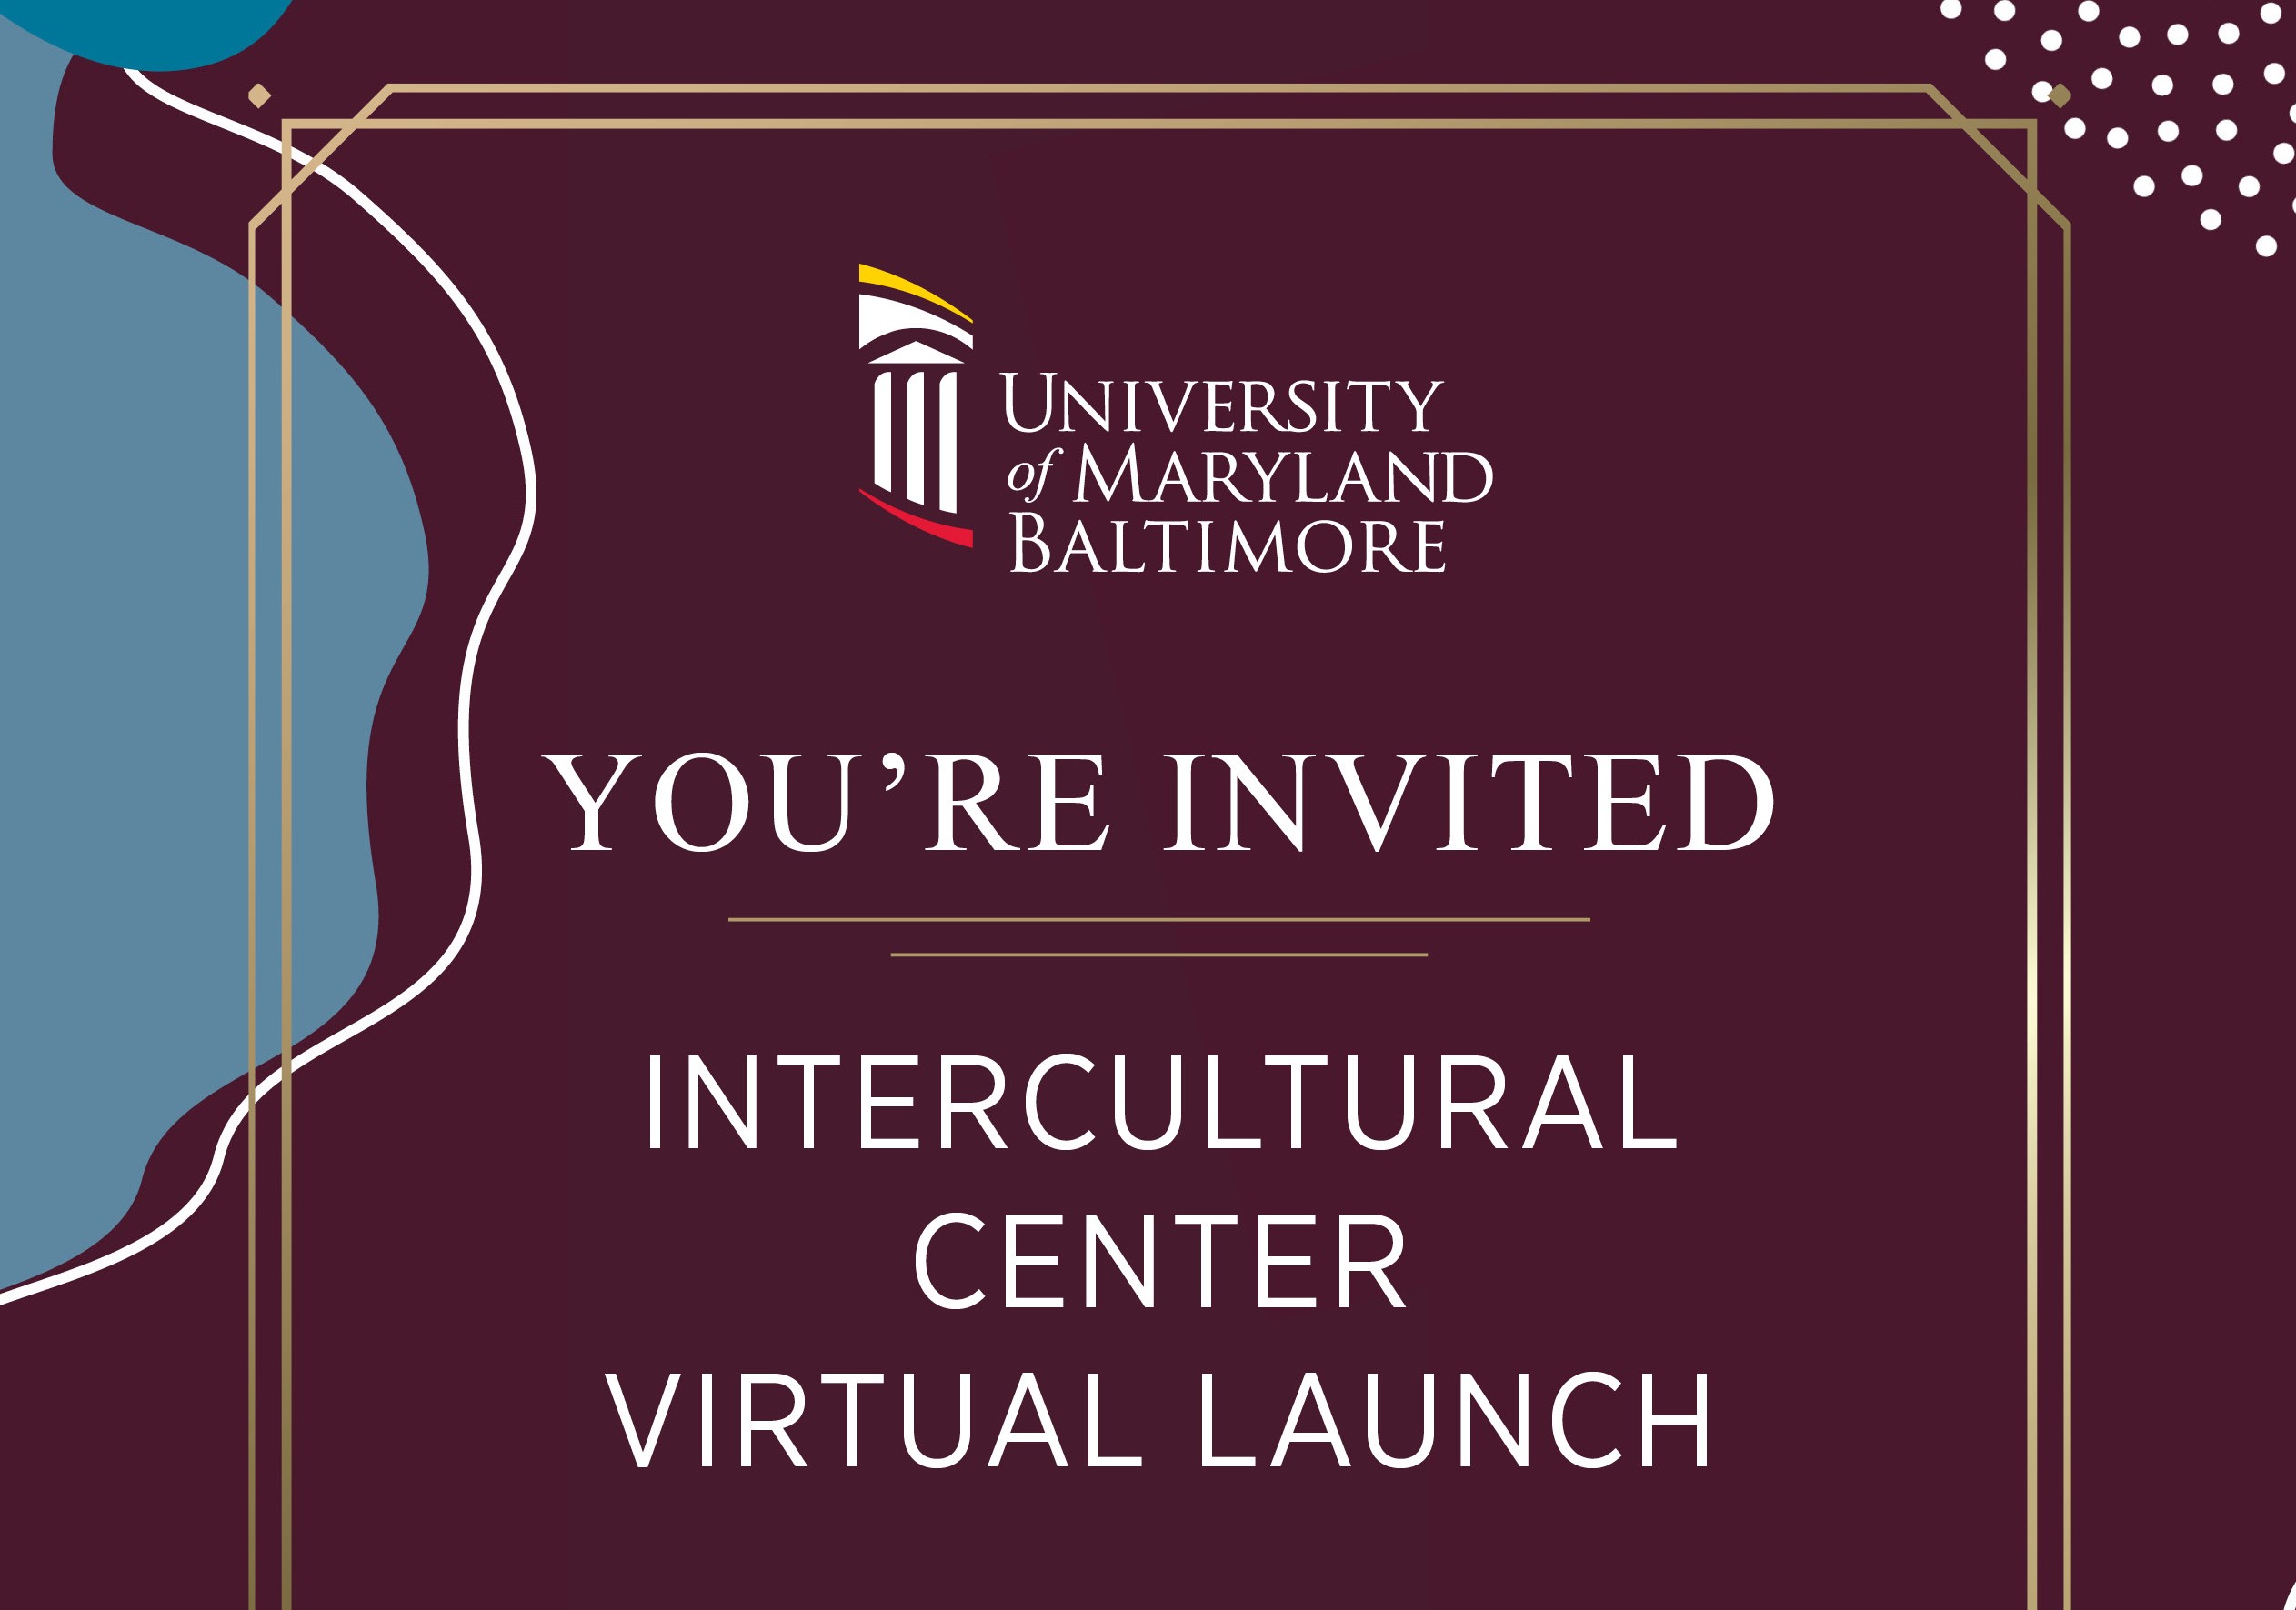 Intercultural Center launch